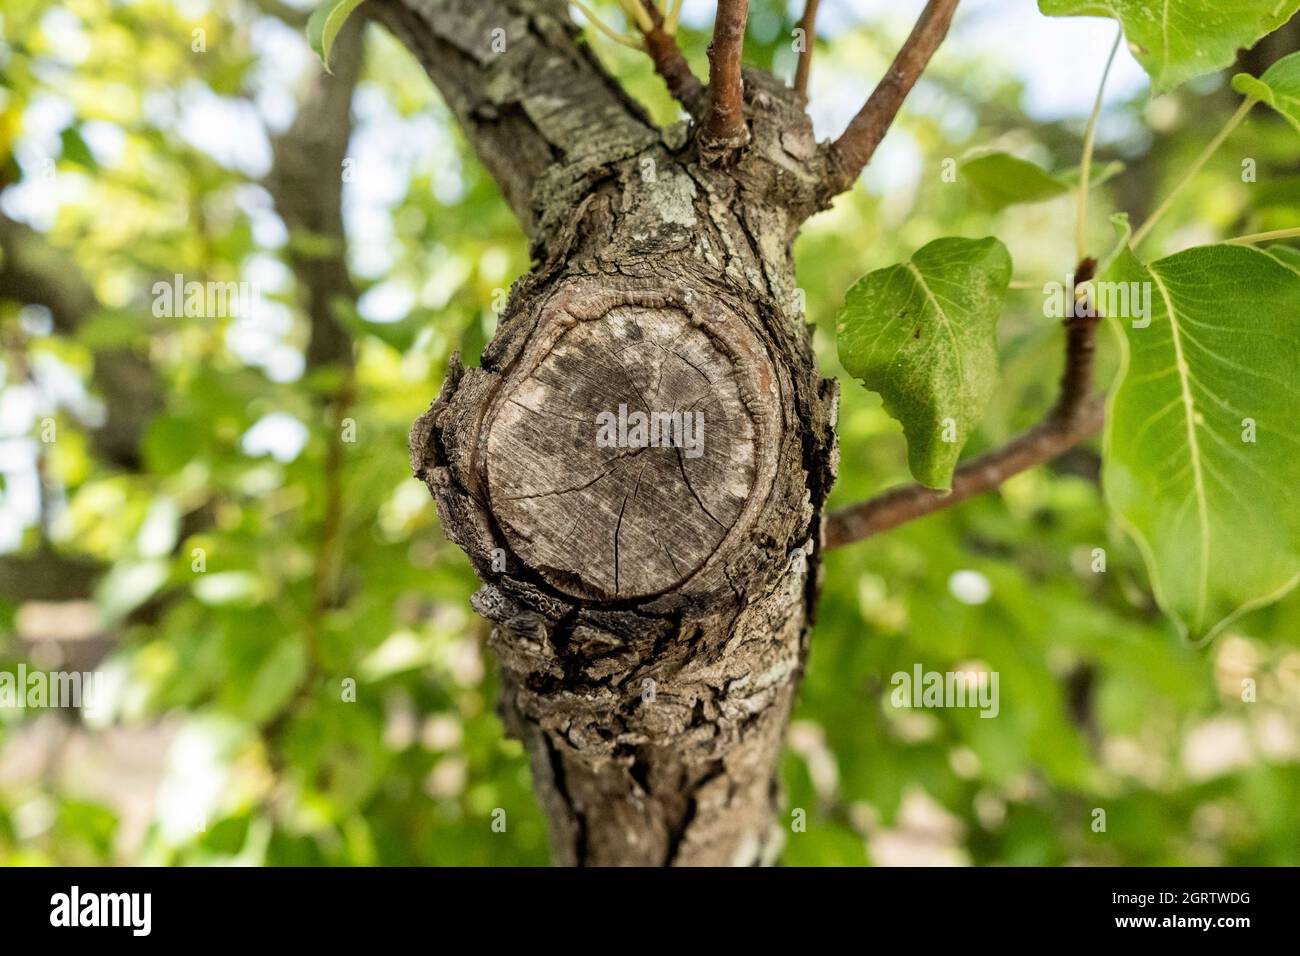 Section de tronc d'un arbre de poire (Pyrus communis), une variété commune en Italie appelée 'Coscia poire', à Salento, Puglia, dans le sud de l'Italie Banque D'Images